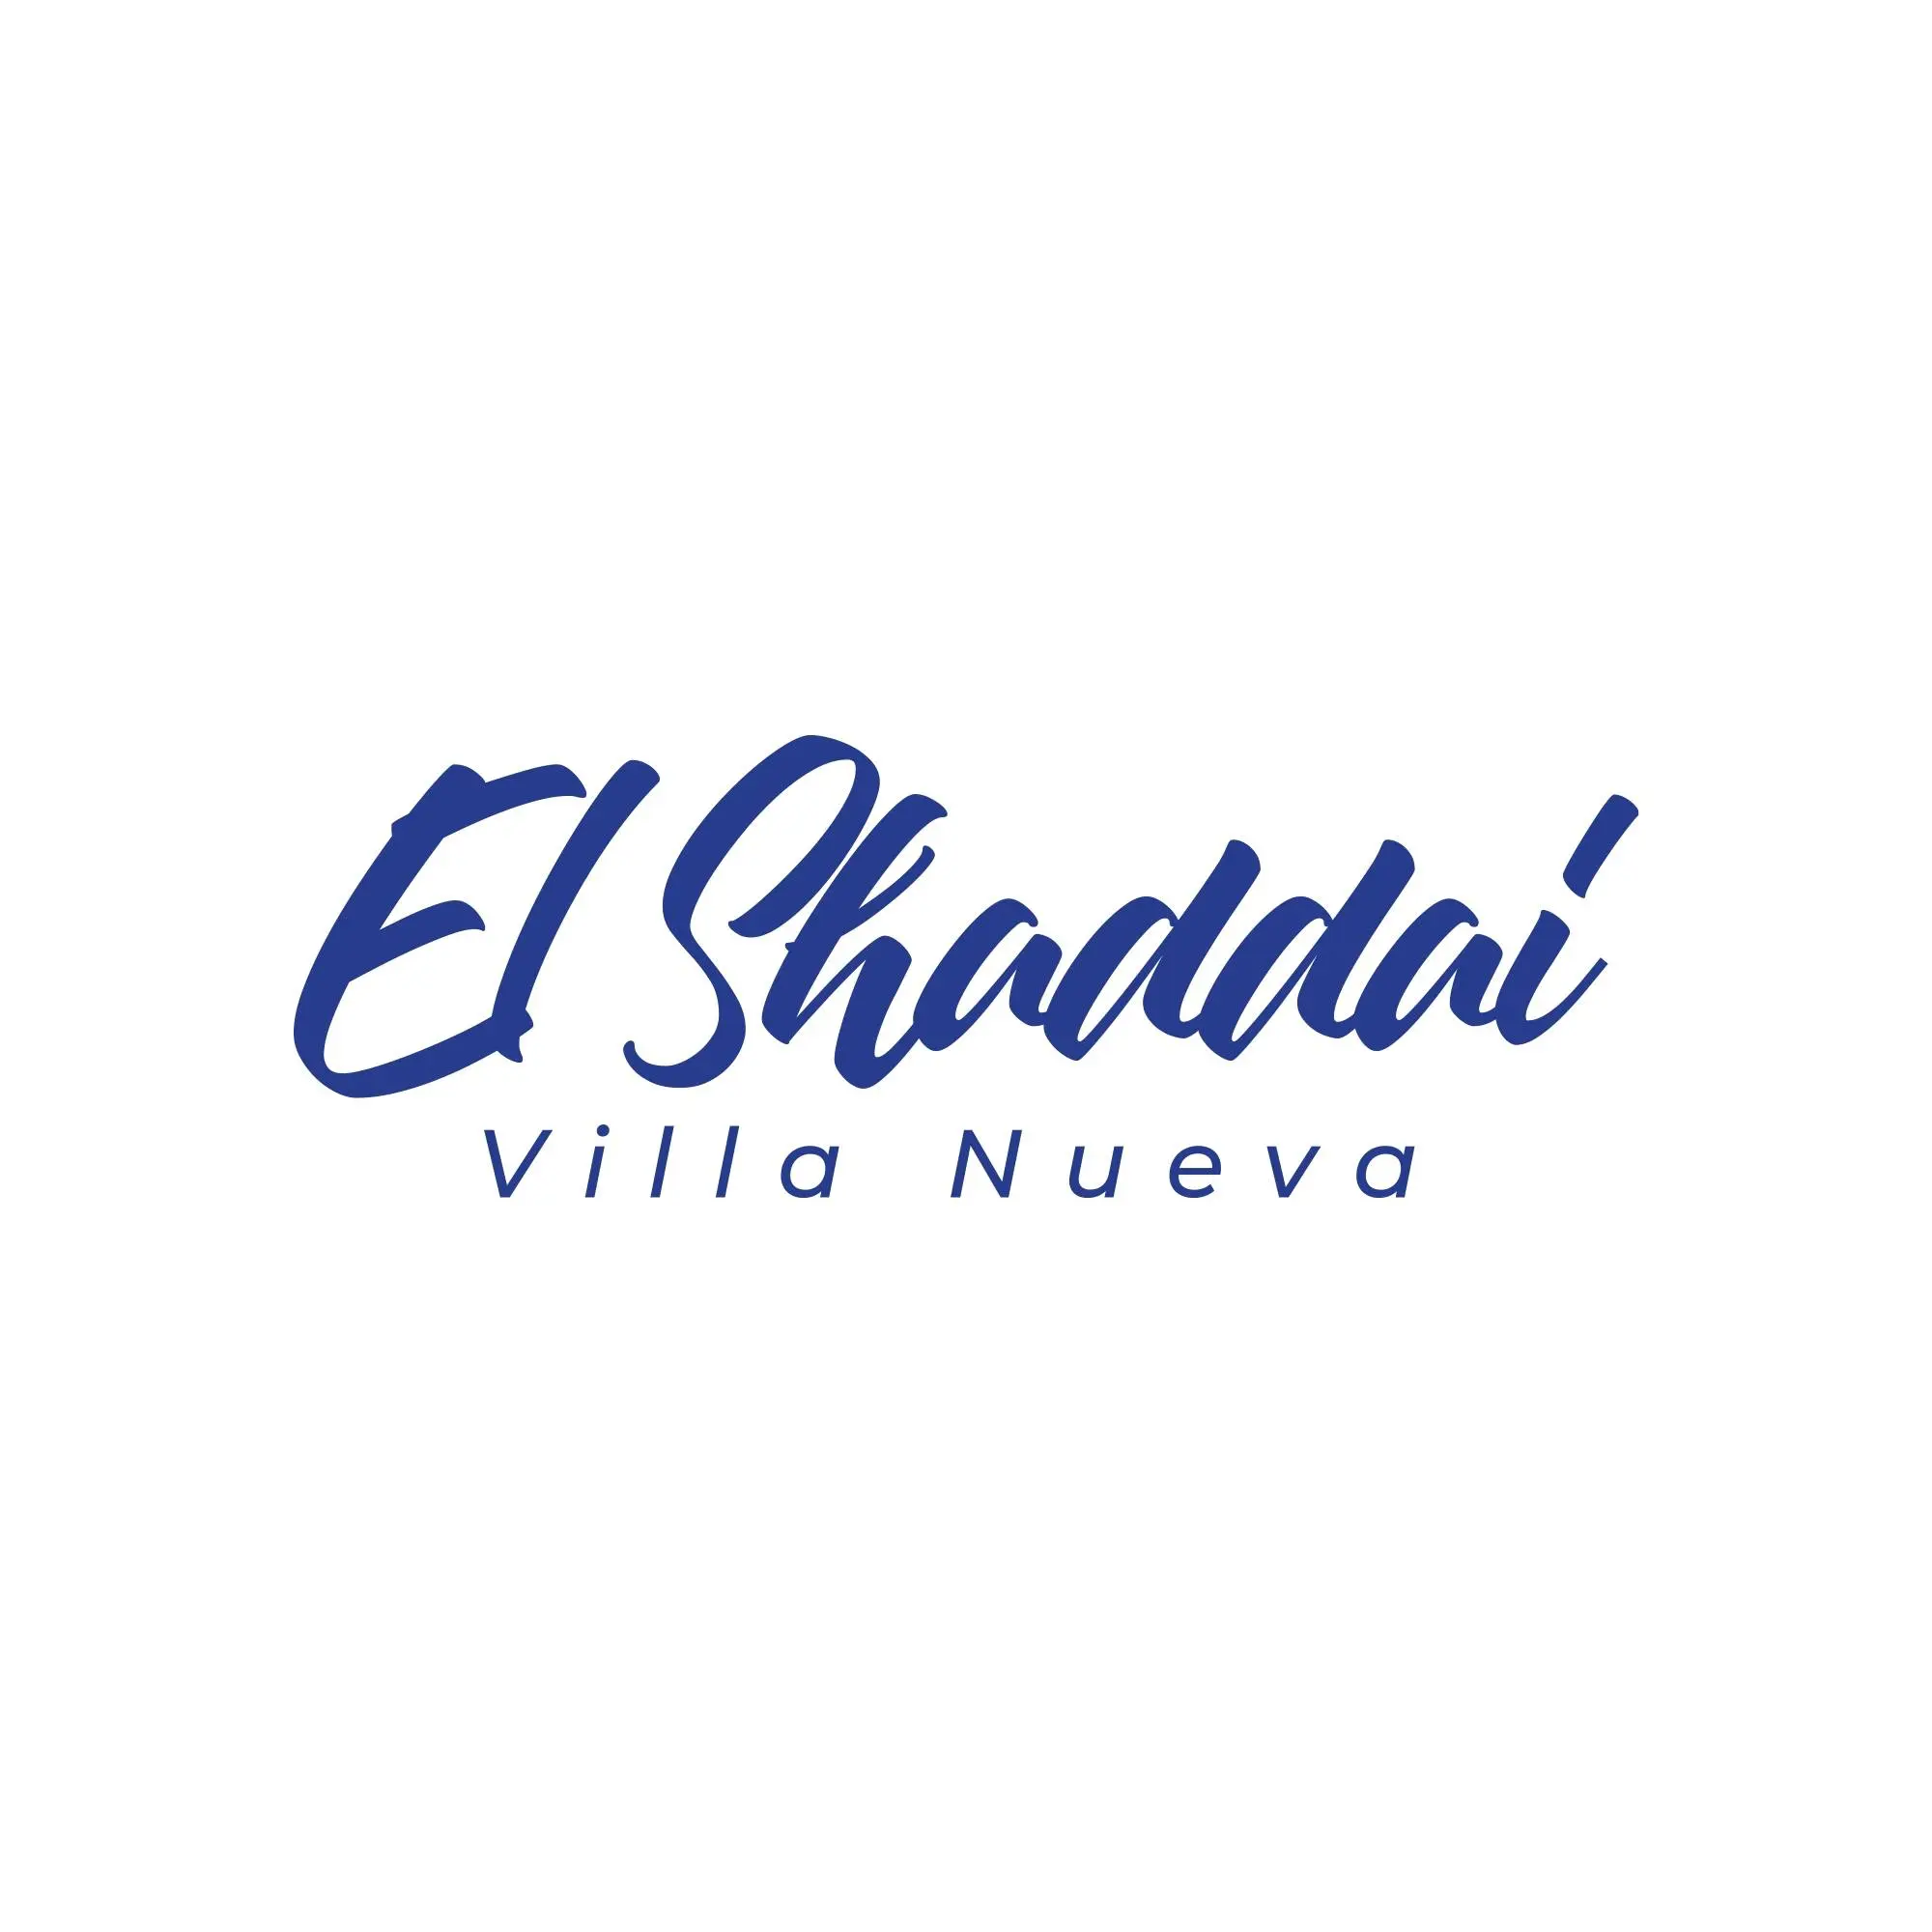 El Shaddi Villa Nueva